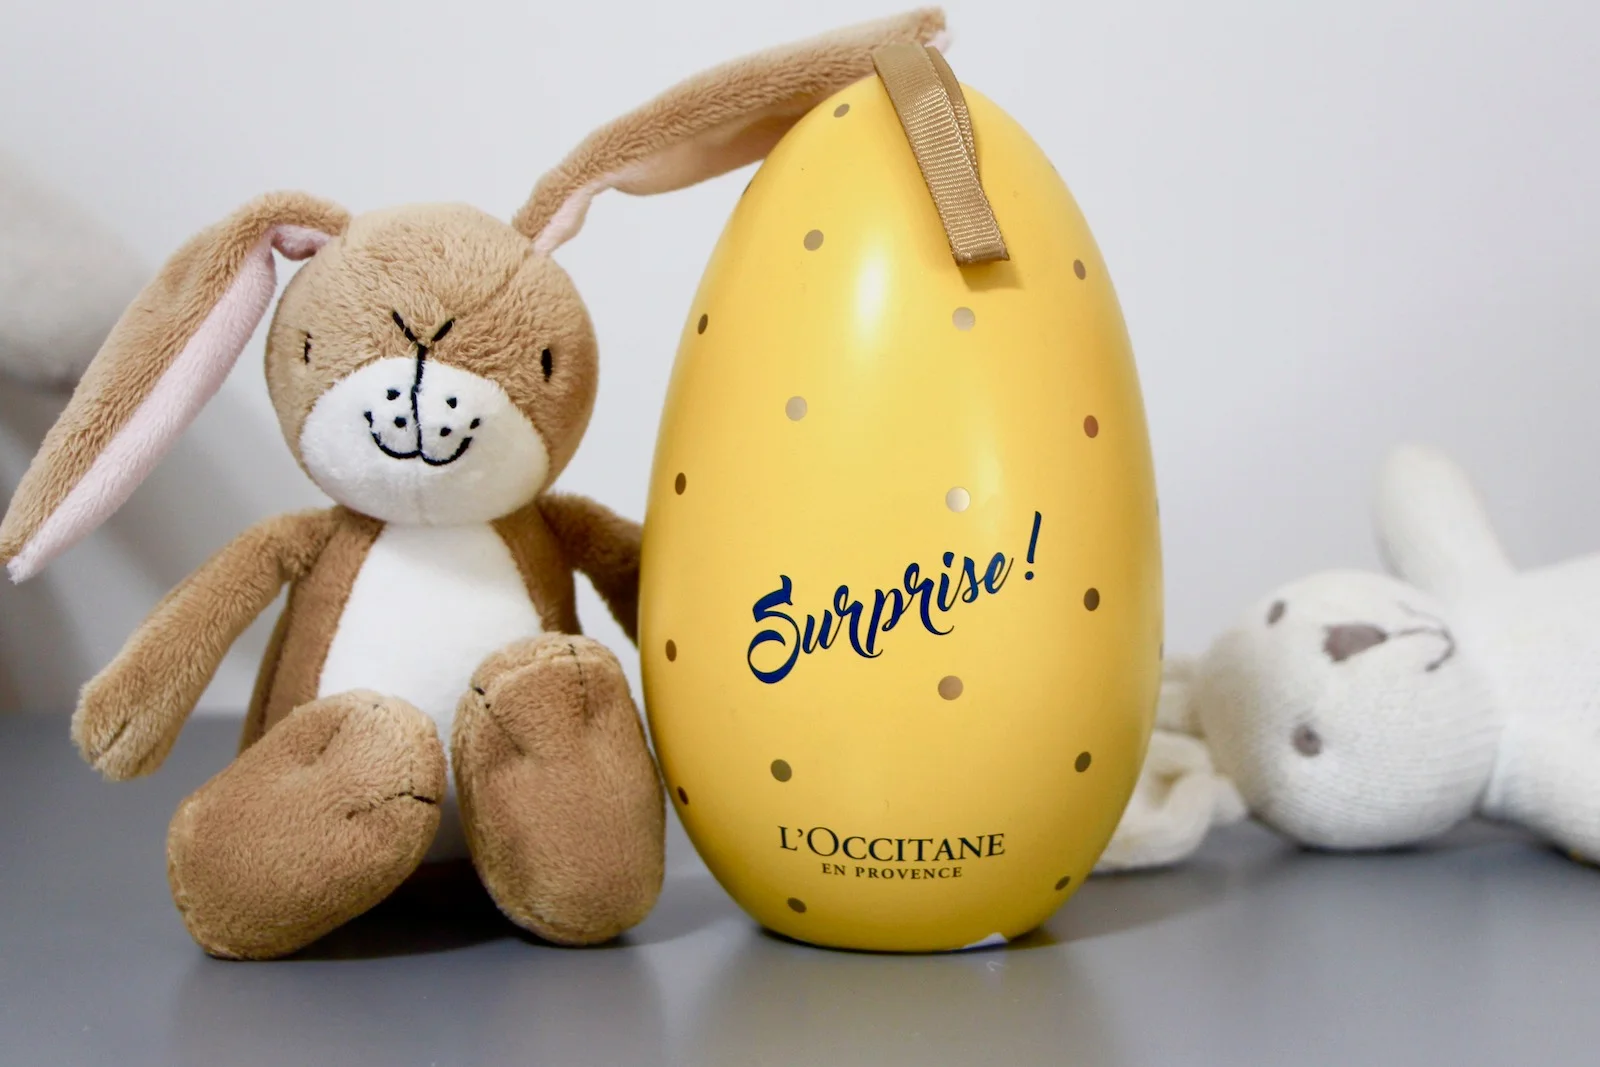 The L'Occitane Beauty Easter Egg